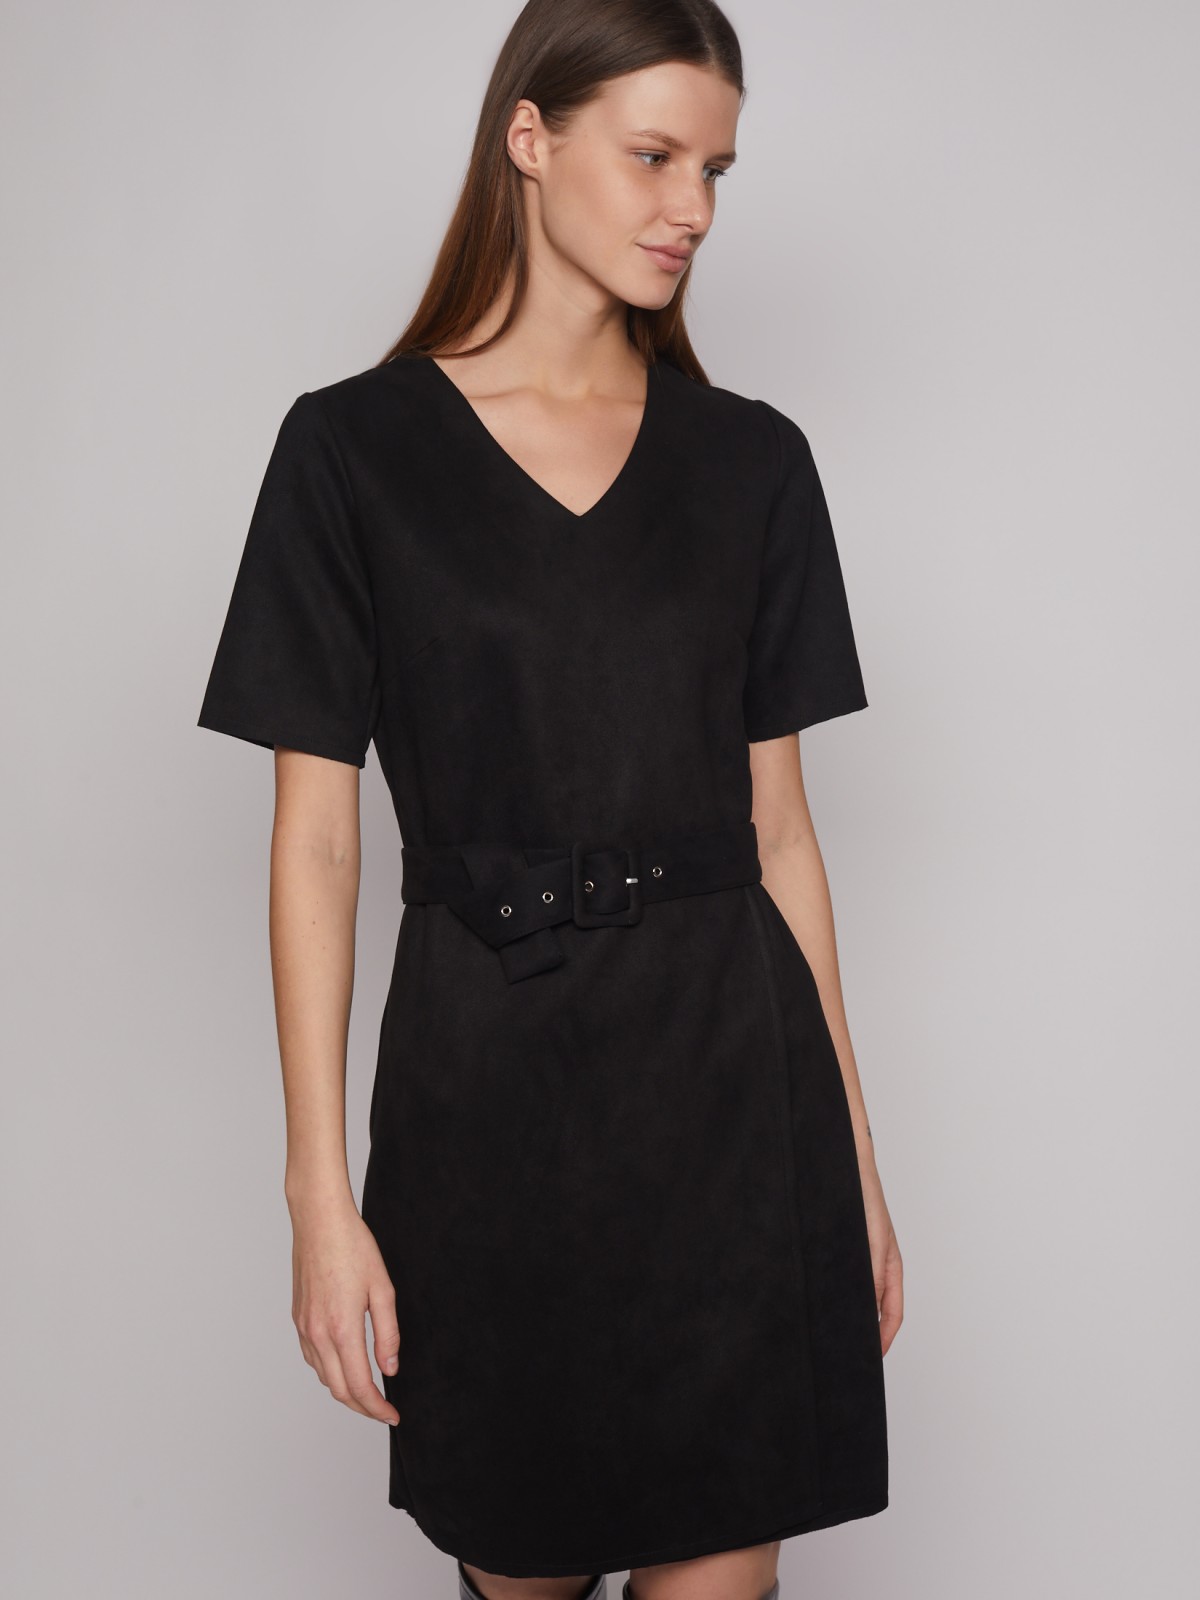 Платье из имитации замши с ремнём zolla 223128262283, цвет черный, размер S - фото 4